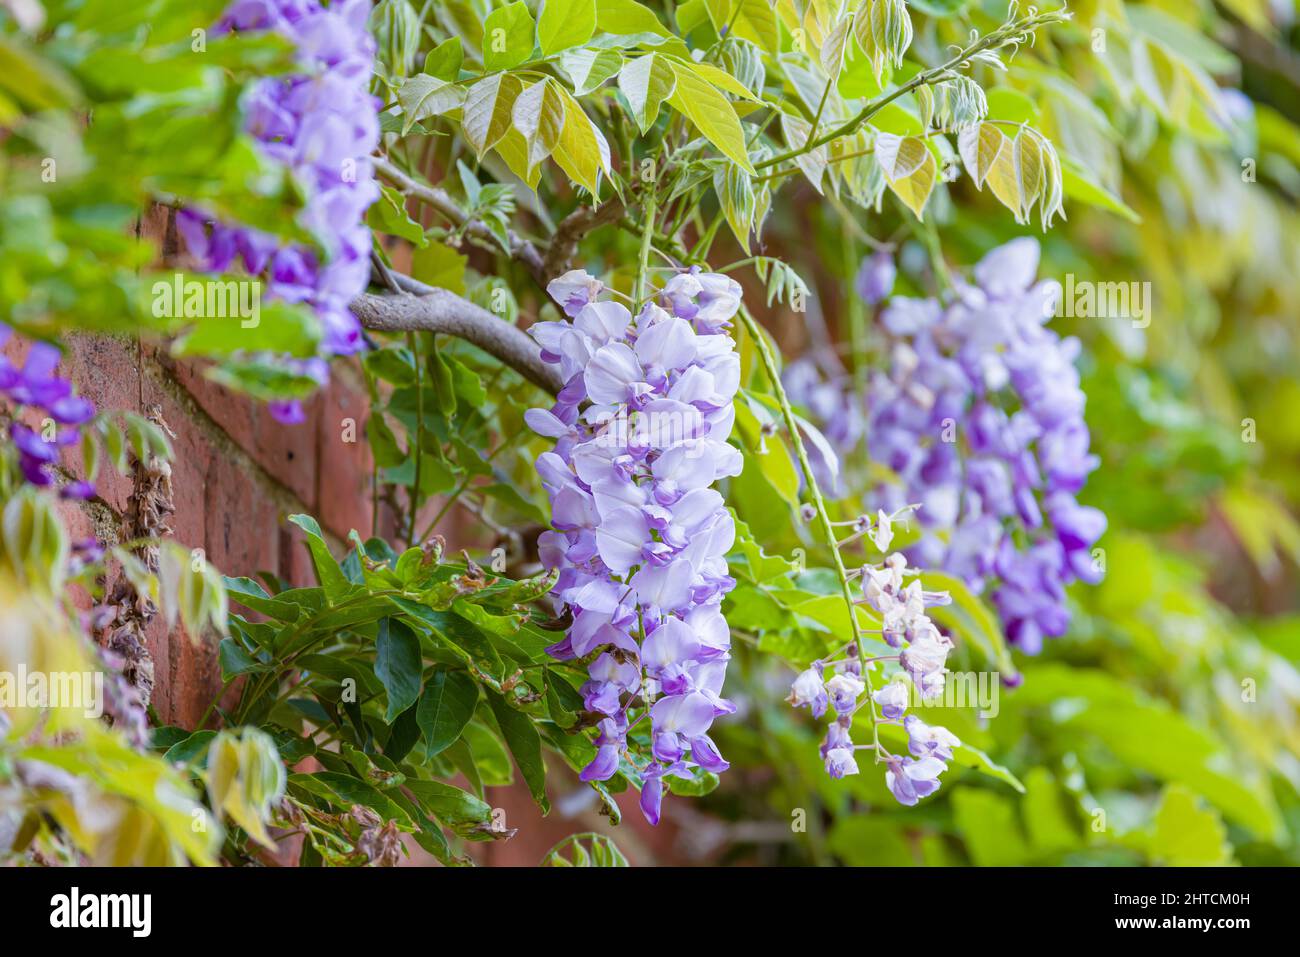 Fleurs de wisteria (ratons laveurs). Vignes d'une plante de wisteria grimpant ou arbre poussant sur un mur de maison au printemps, Royaume-Uni. Banque D'Images